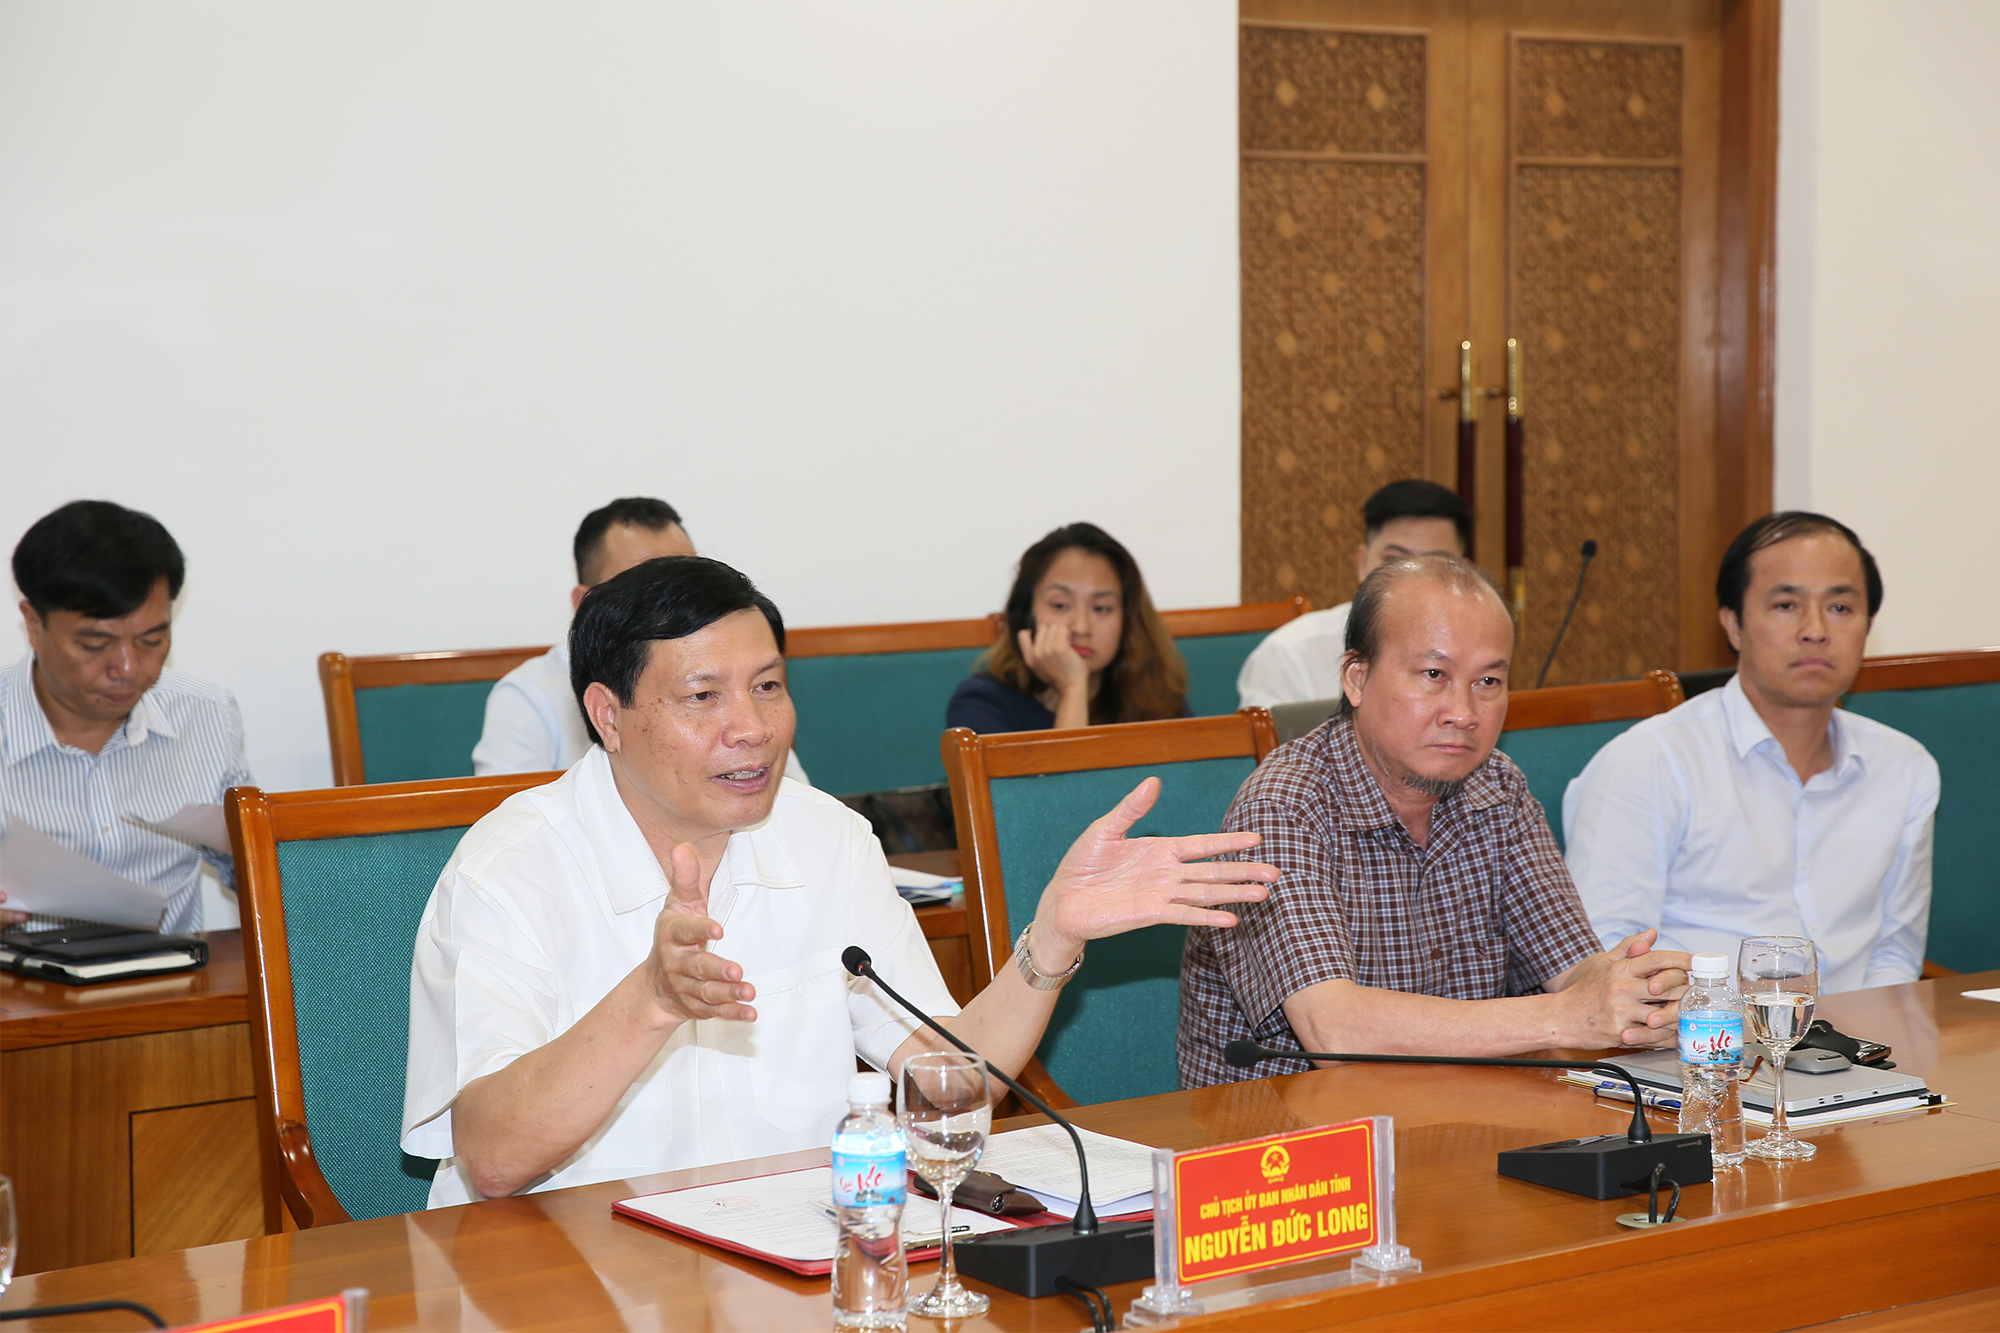 Chủ tịch UBND tỉnh Nguyễn Đức Long giới thiệu khái quát công tác chuẩn bị đưa Cảng hàng không quốc tế Vân Đồn vào khai thác